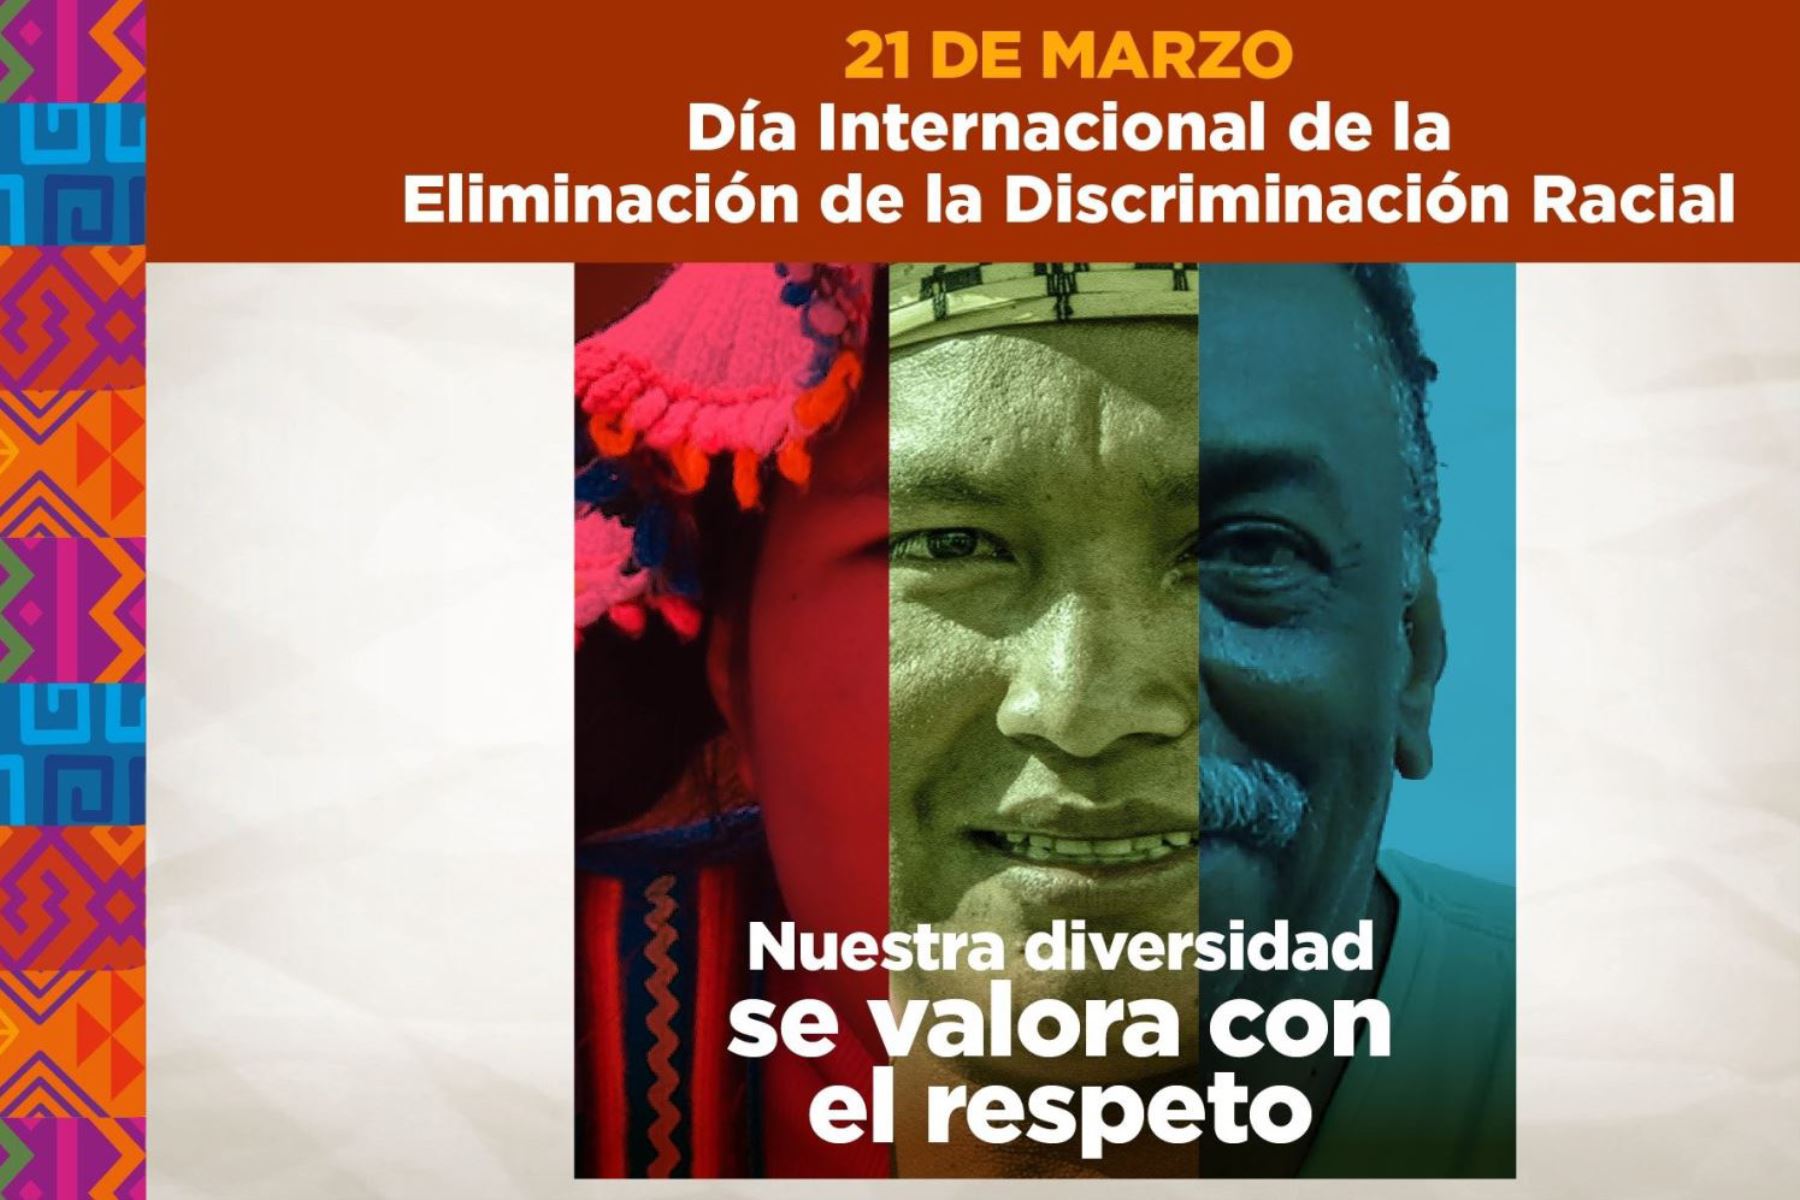 Presidencia del Consejo de Ministros (PCM) conmemora Día Internacional de la Eliminación de la Discriminación Racial.